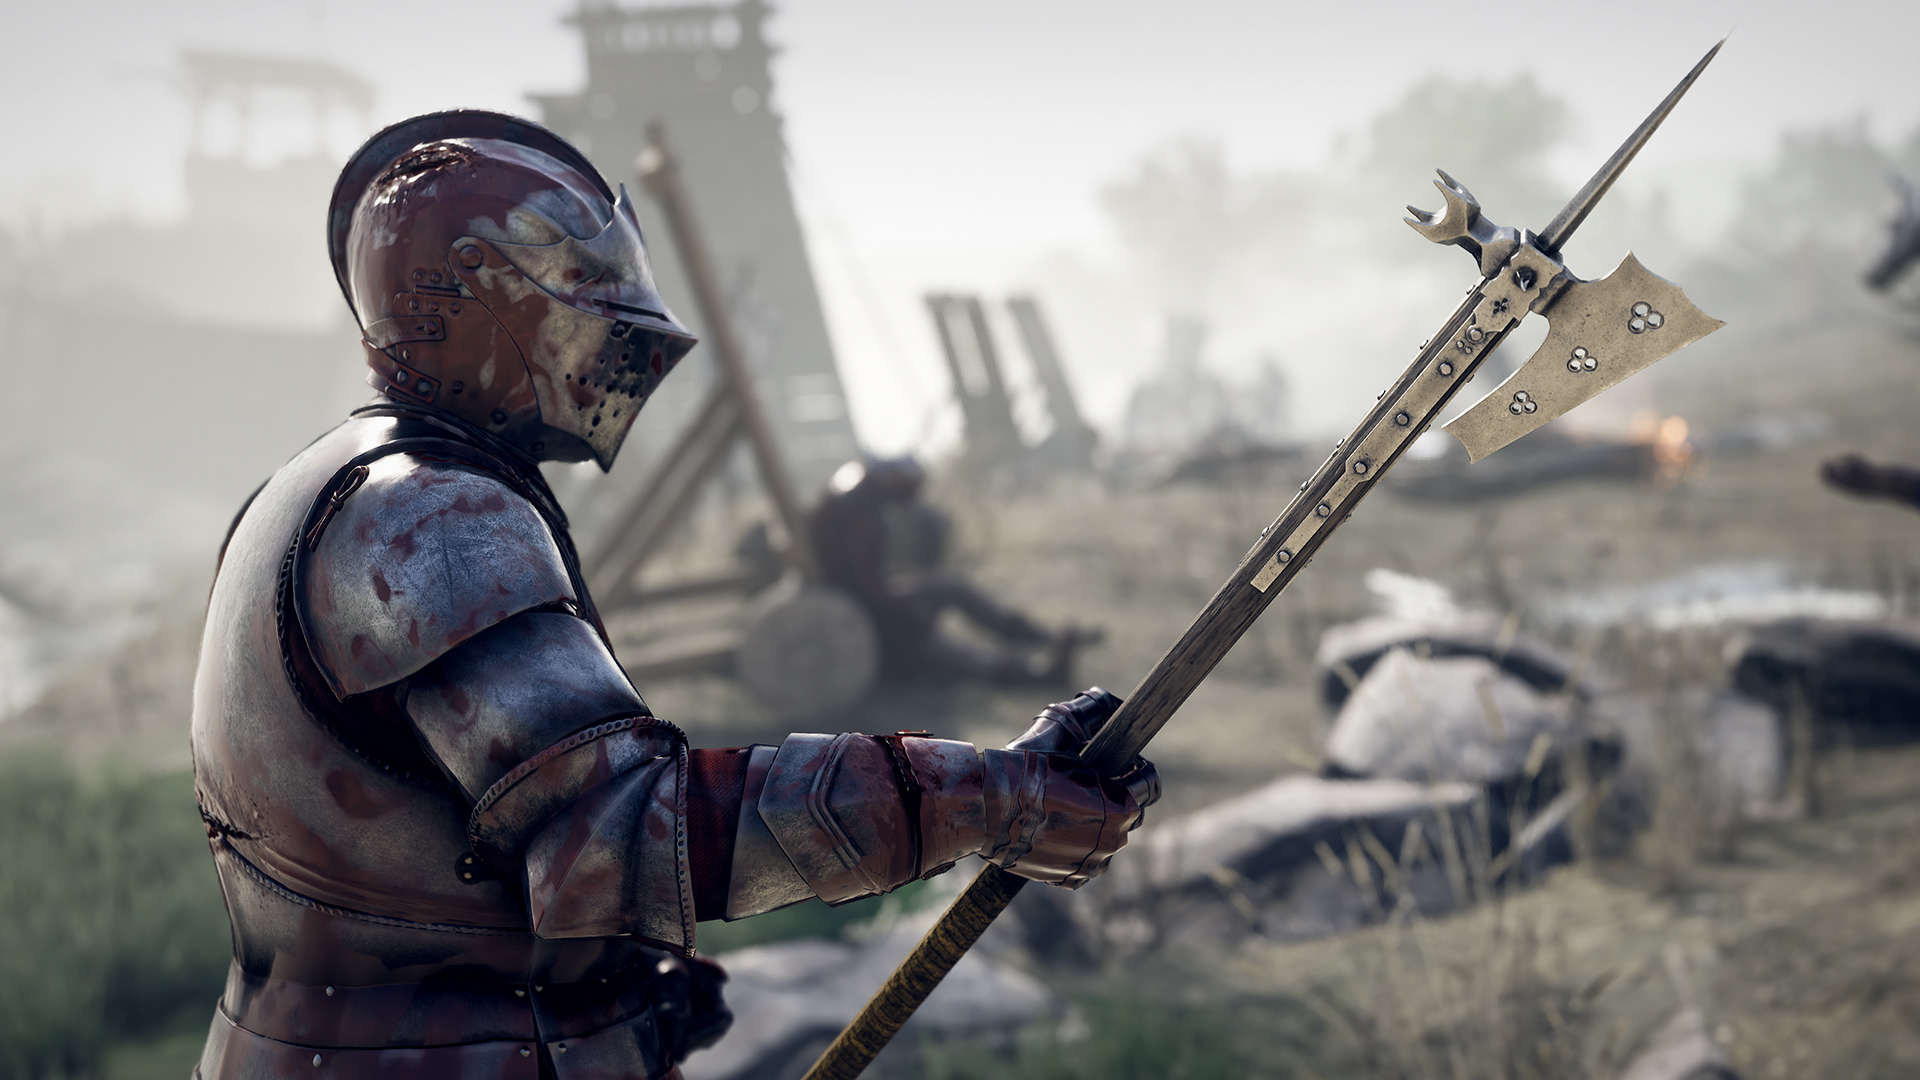 Популярная игра Mordhau про средневековье выйдет на приставках Xbox